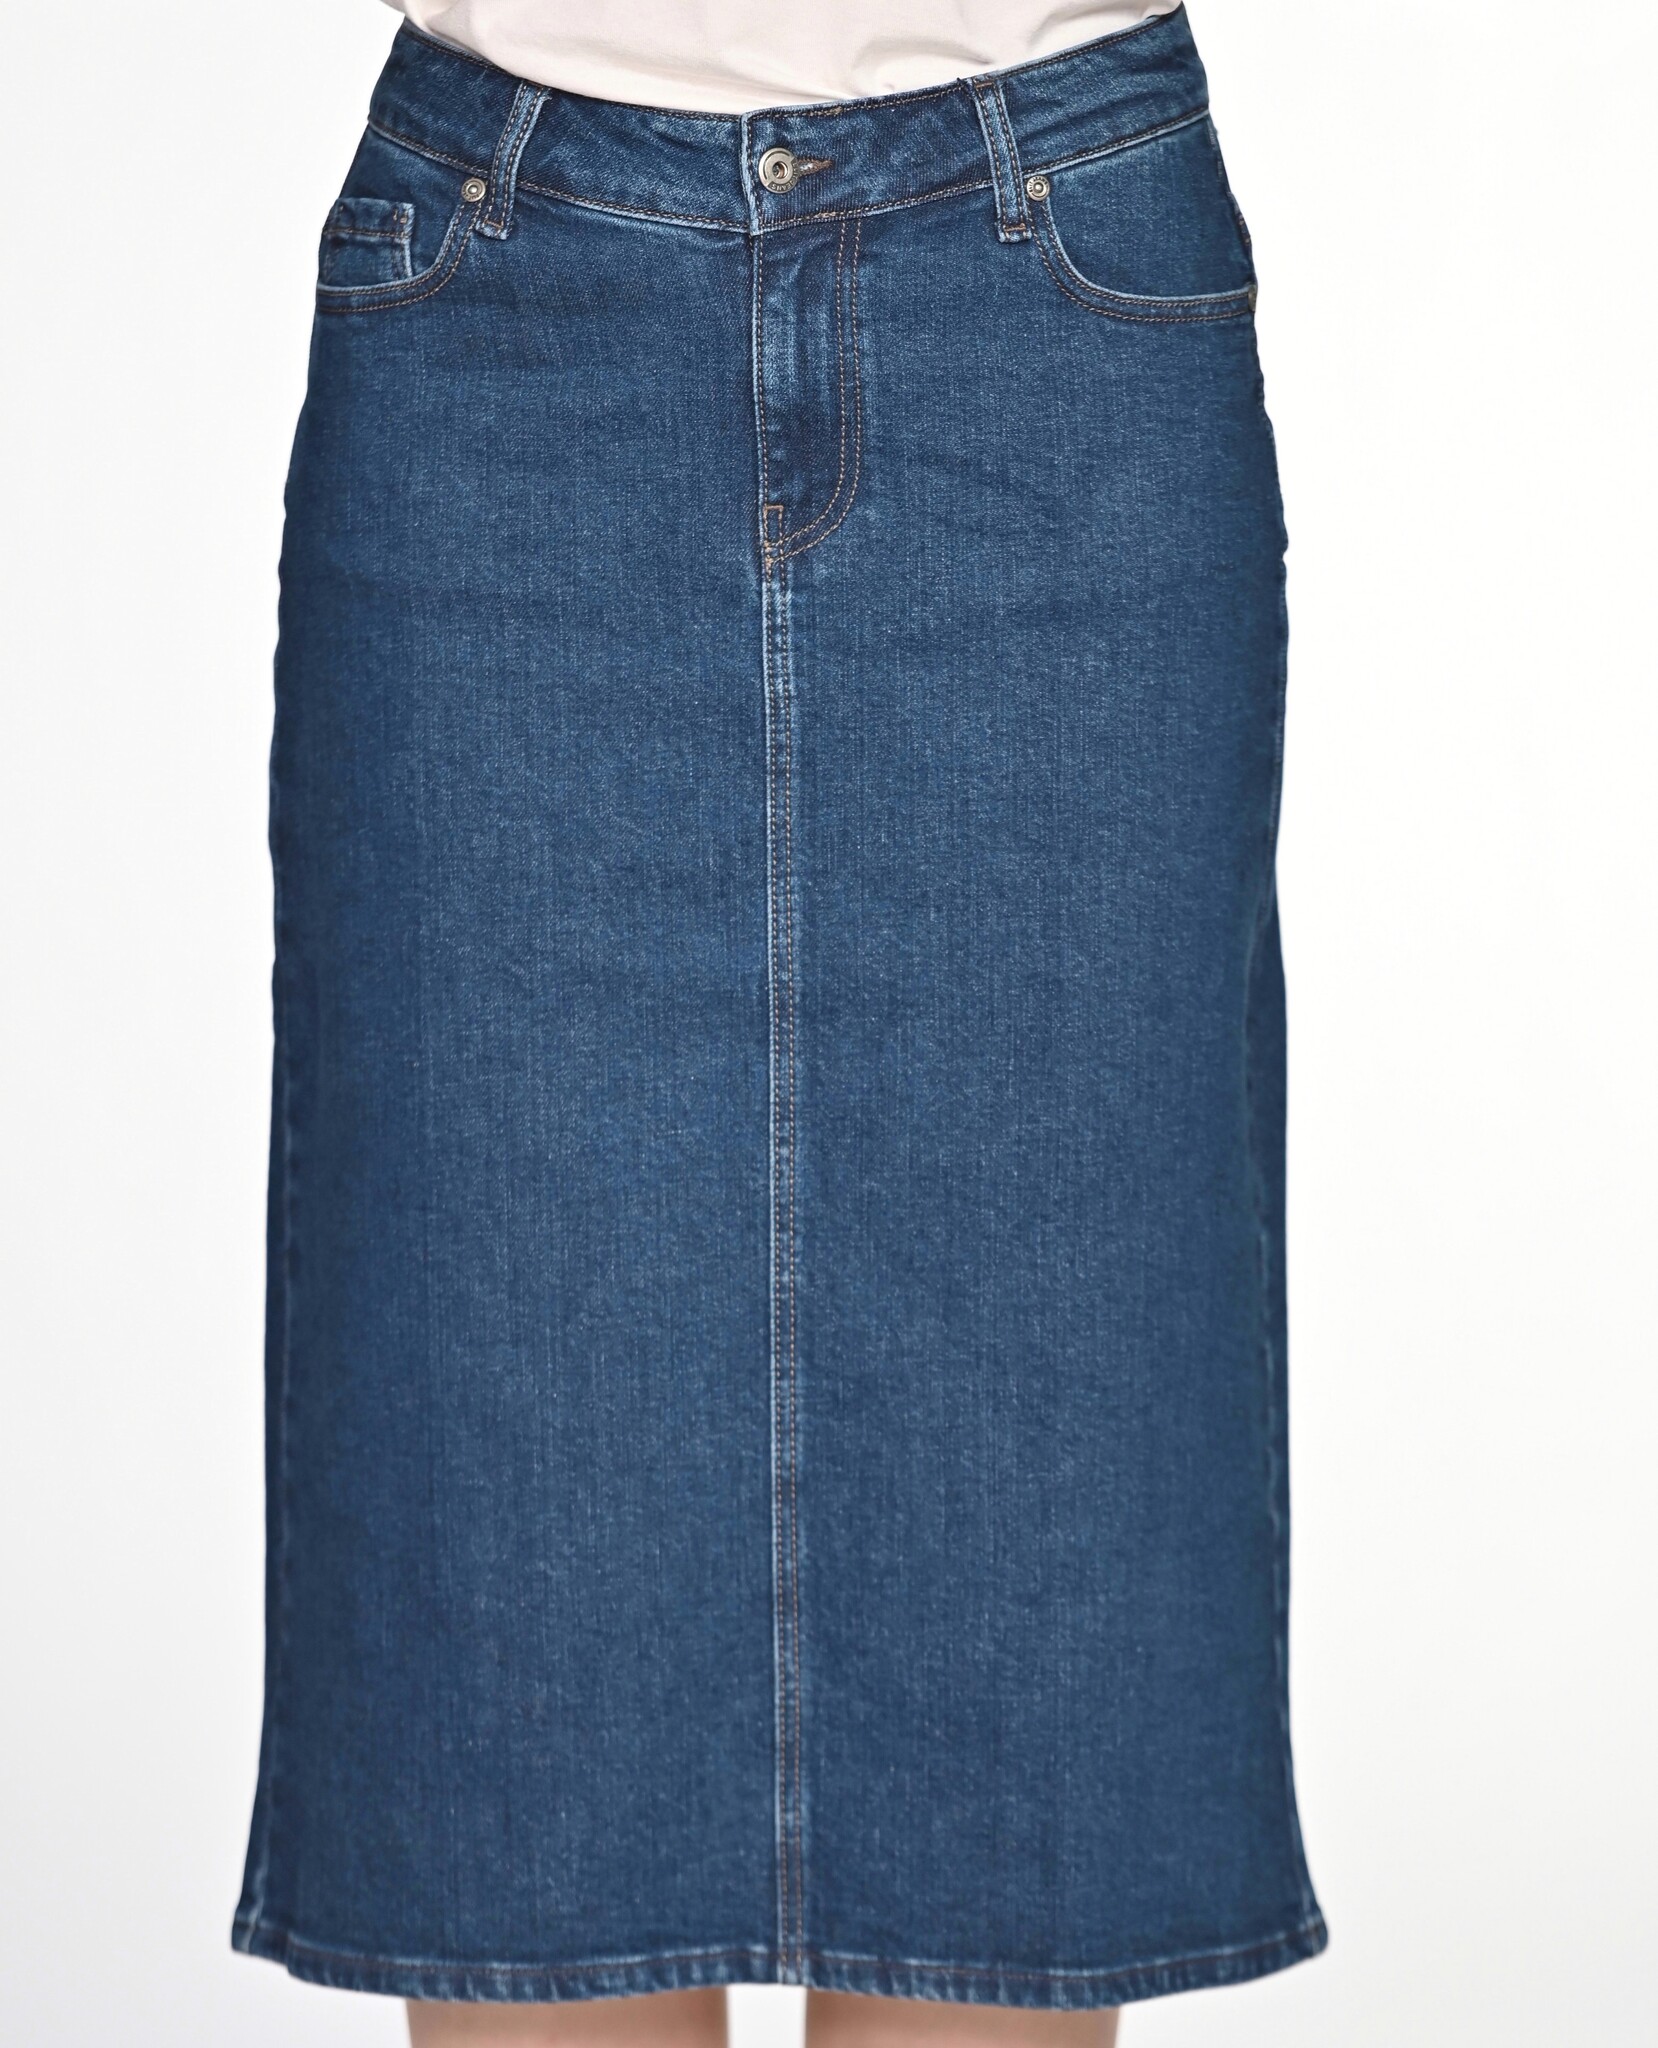 EXELIT DOO ELIT Jeansrock XENIA, jeans, 76 cm